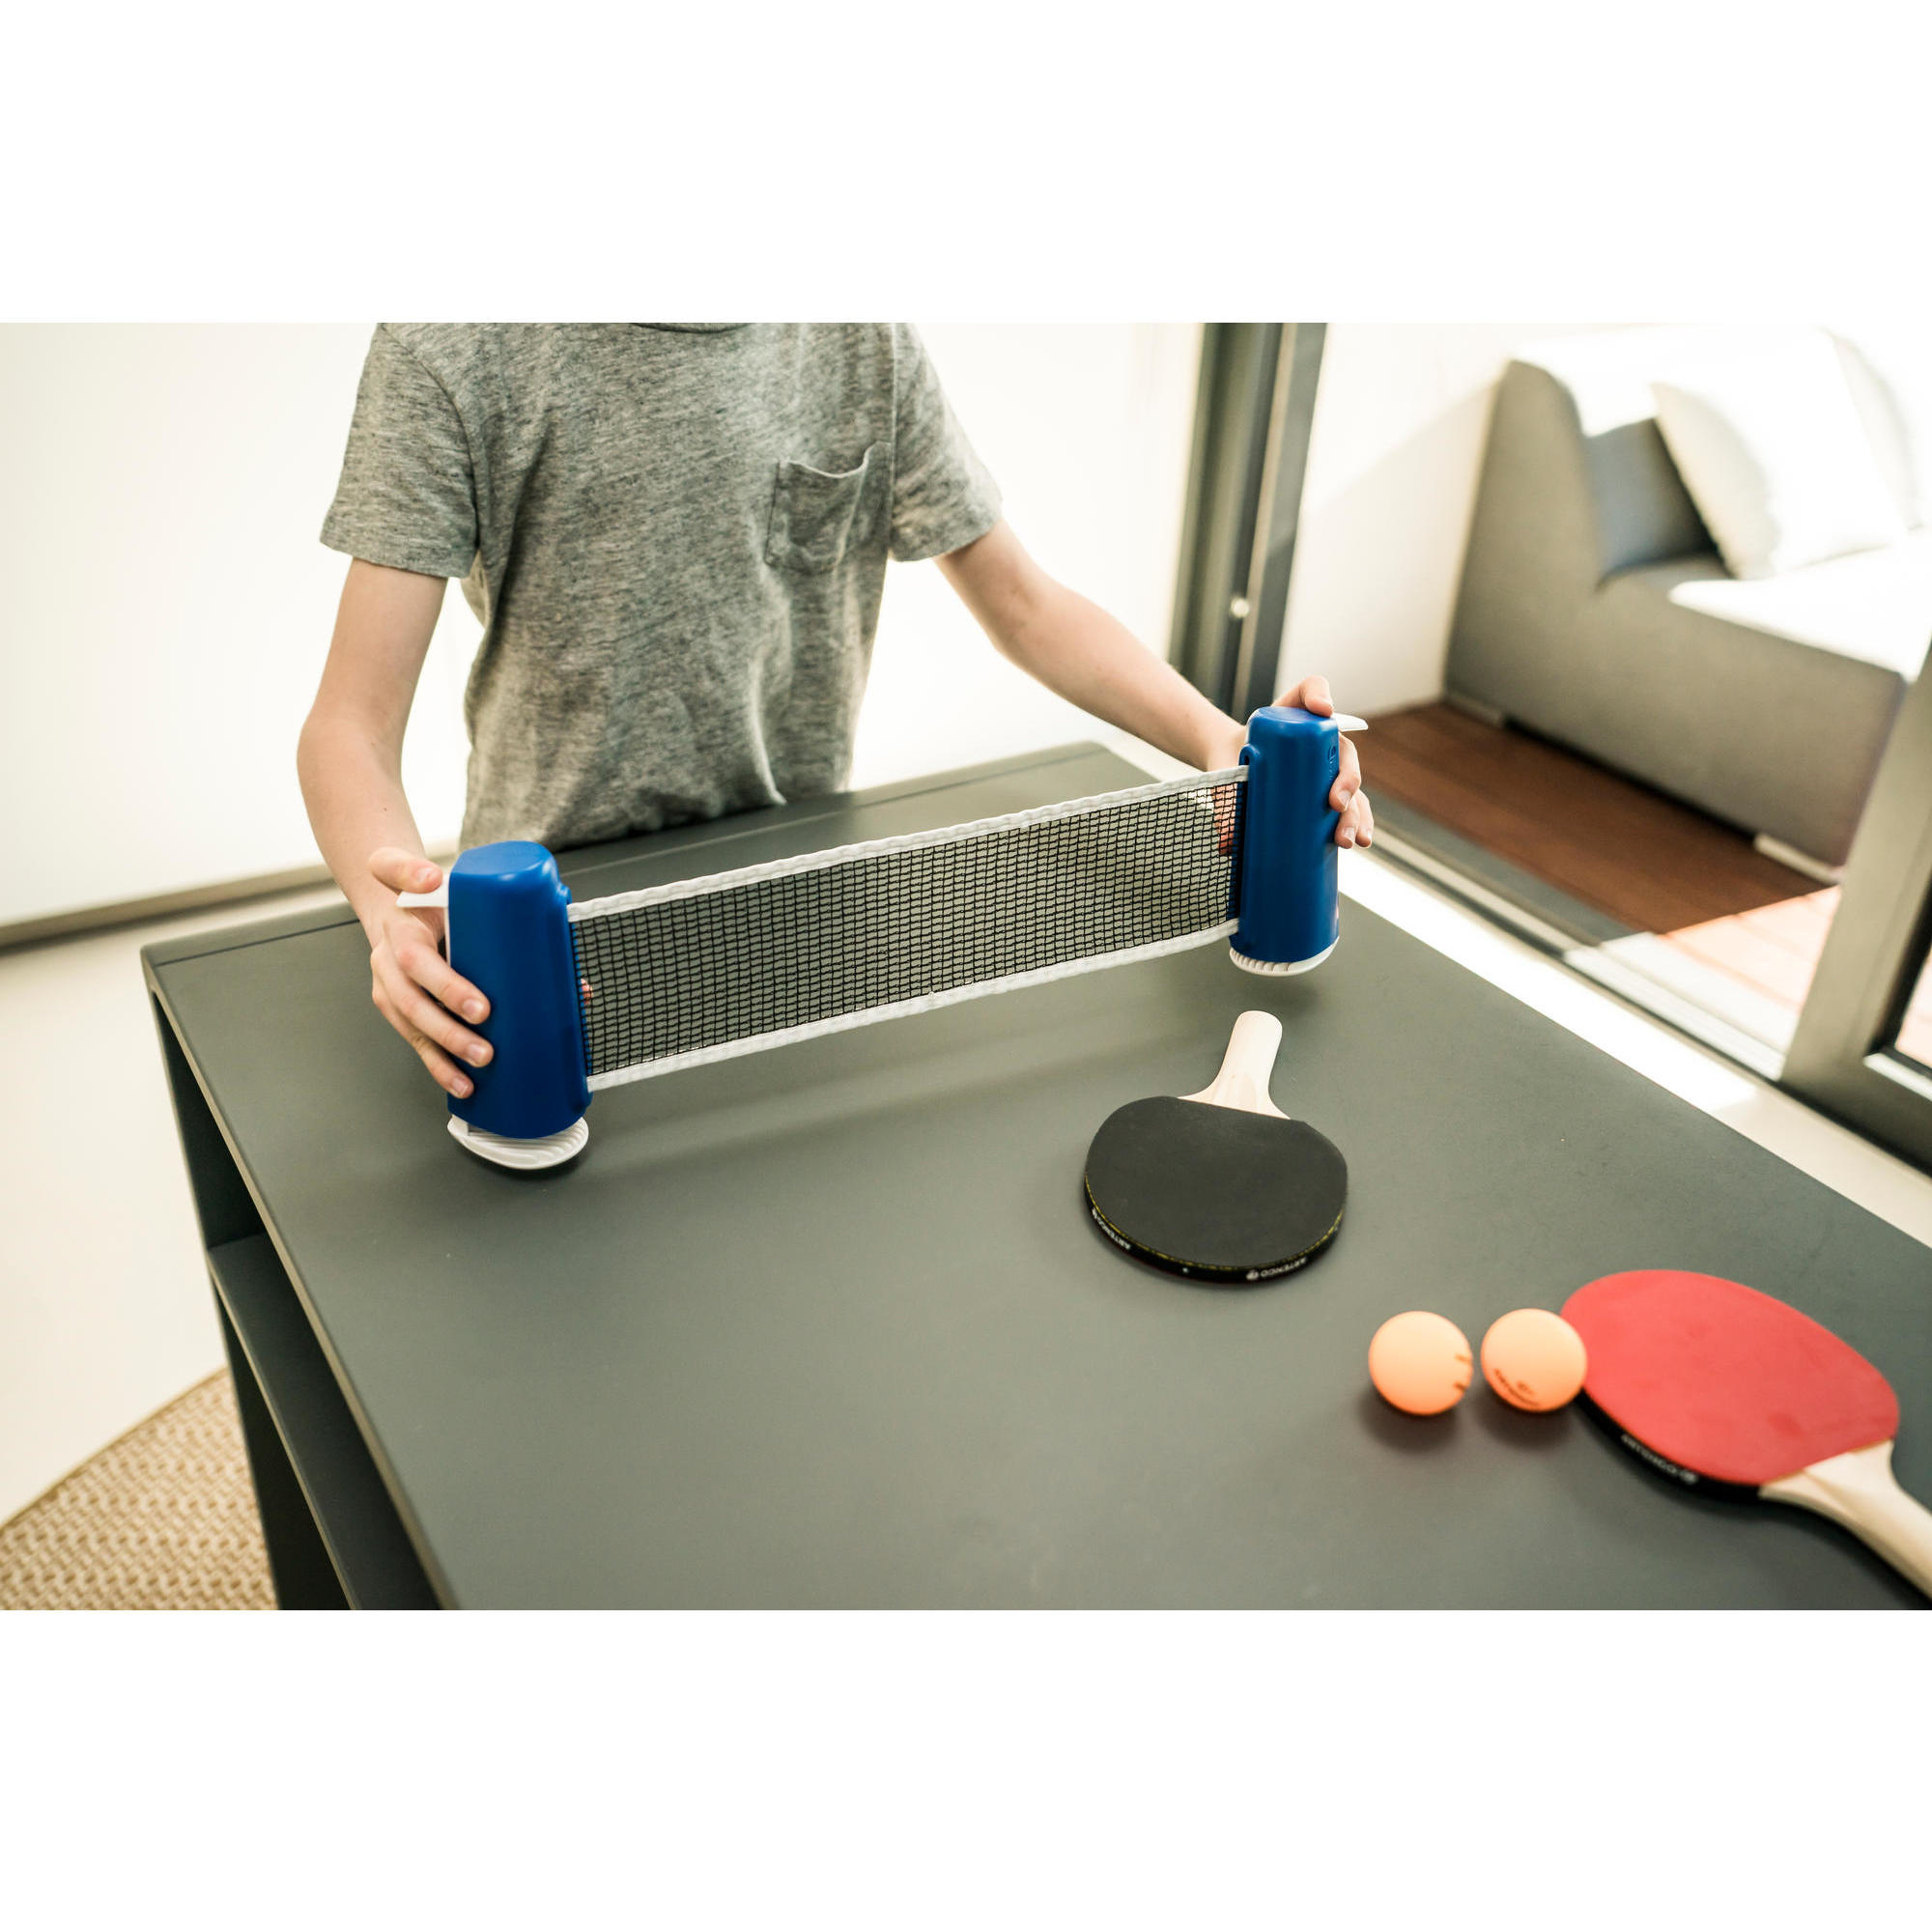 Home Tischtennis Set Tischtennisschläger+Netz Freizeit Ping-Pong Tischtennisset 